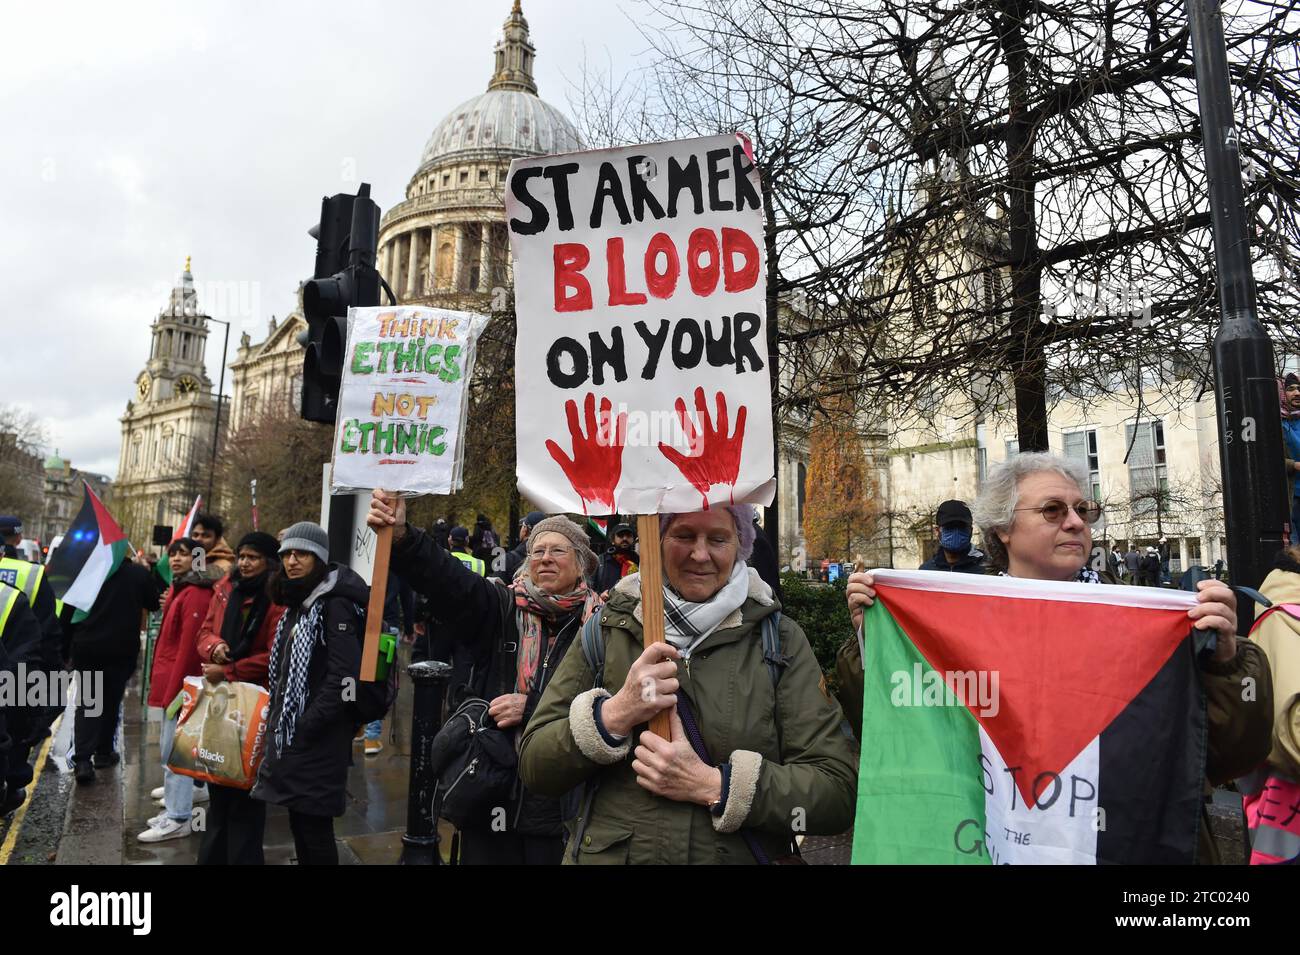 Demonstranten halten Plakate bei der Demonstration. Demonstranten versammelten sich in der Bank Junction, London, als Teil des National March for Palestine, um für einen vollständigen Waffenstillstand und ein sofortiges Ende des Krieges in Gaza zu plädieren. Die von der Palästinensischen Solidaritätskampagne organisierte Demonstration wird von verschiedenen propalästinensischen Gruppen unterstützt, darunter Freunde von Al-Aqsa, Stop the war Coalition und das Palästinensische Forum in Großbritannien. Die Demonstranten marschieren durch das Zentrum Londons und rufen Frieden und Solidarität mit dem palästinensischen Volk auf. Stockfoto